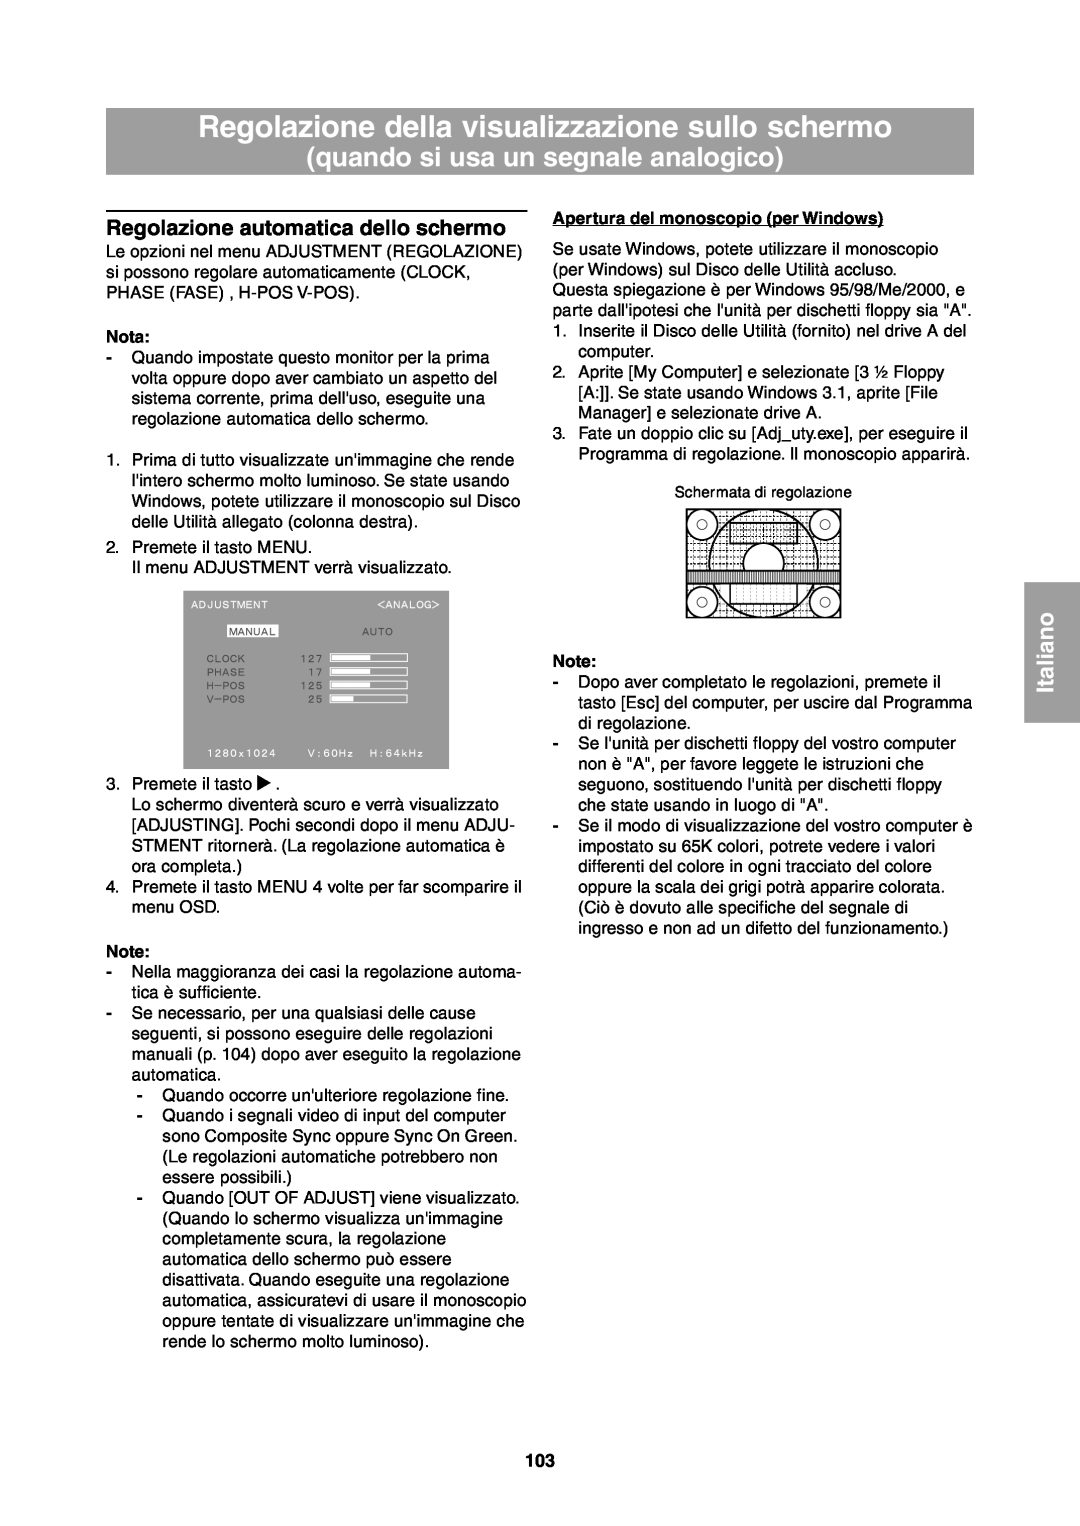 Sharp LL-T1811W Regolazione della visualizzazione sullo schermo, quando si usa un segnale analogico, Italiano, Nota 